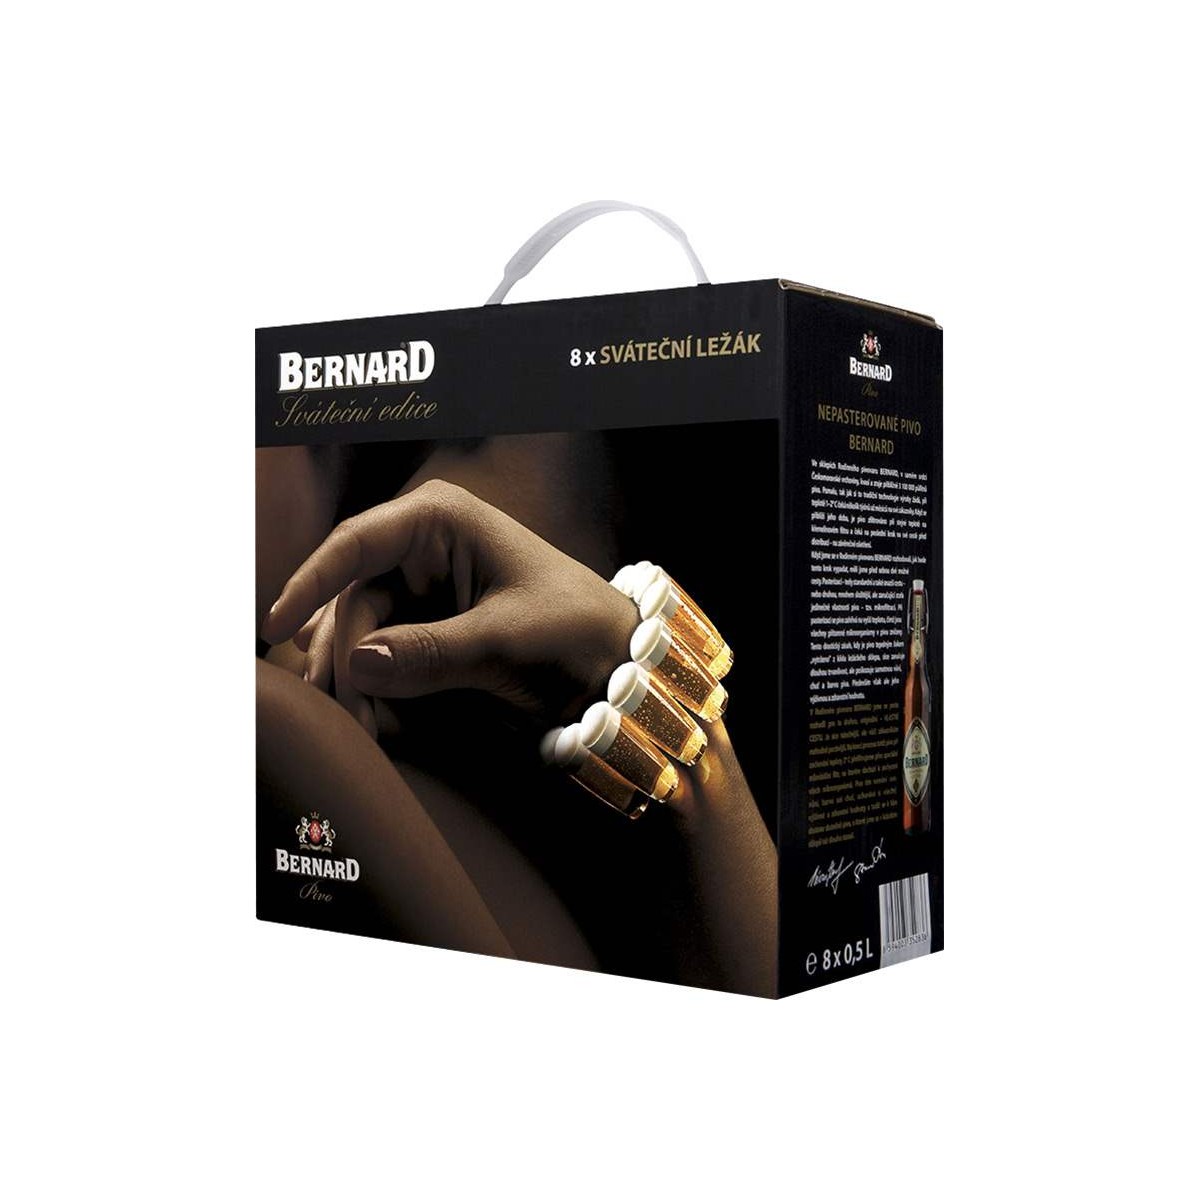 Bernard Sváteční ležák multipack 8x 0,5l - sklo